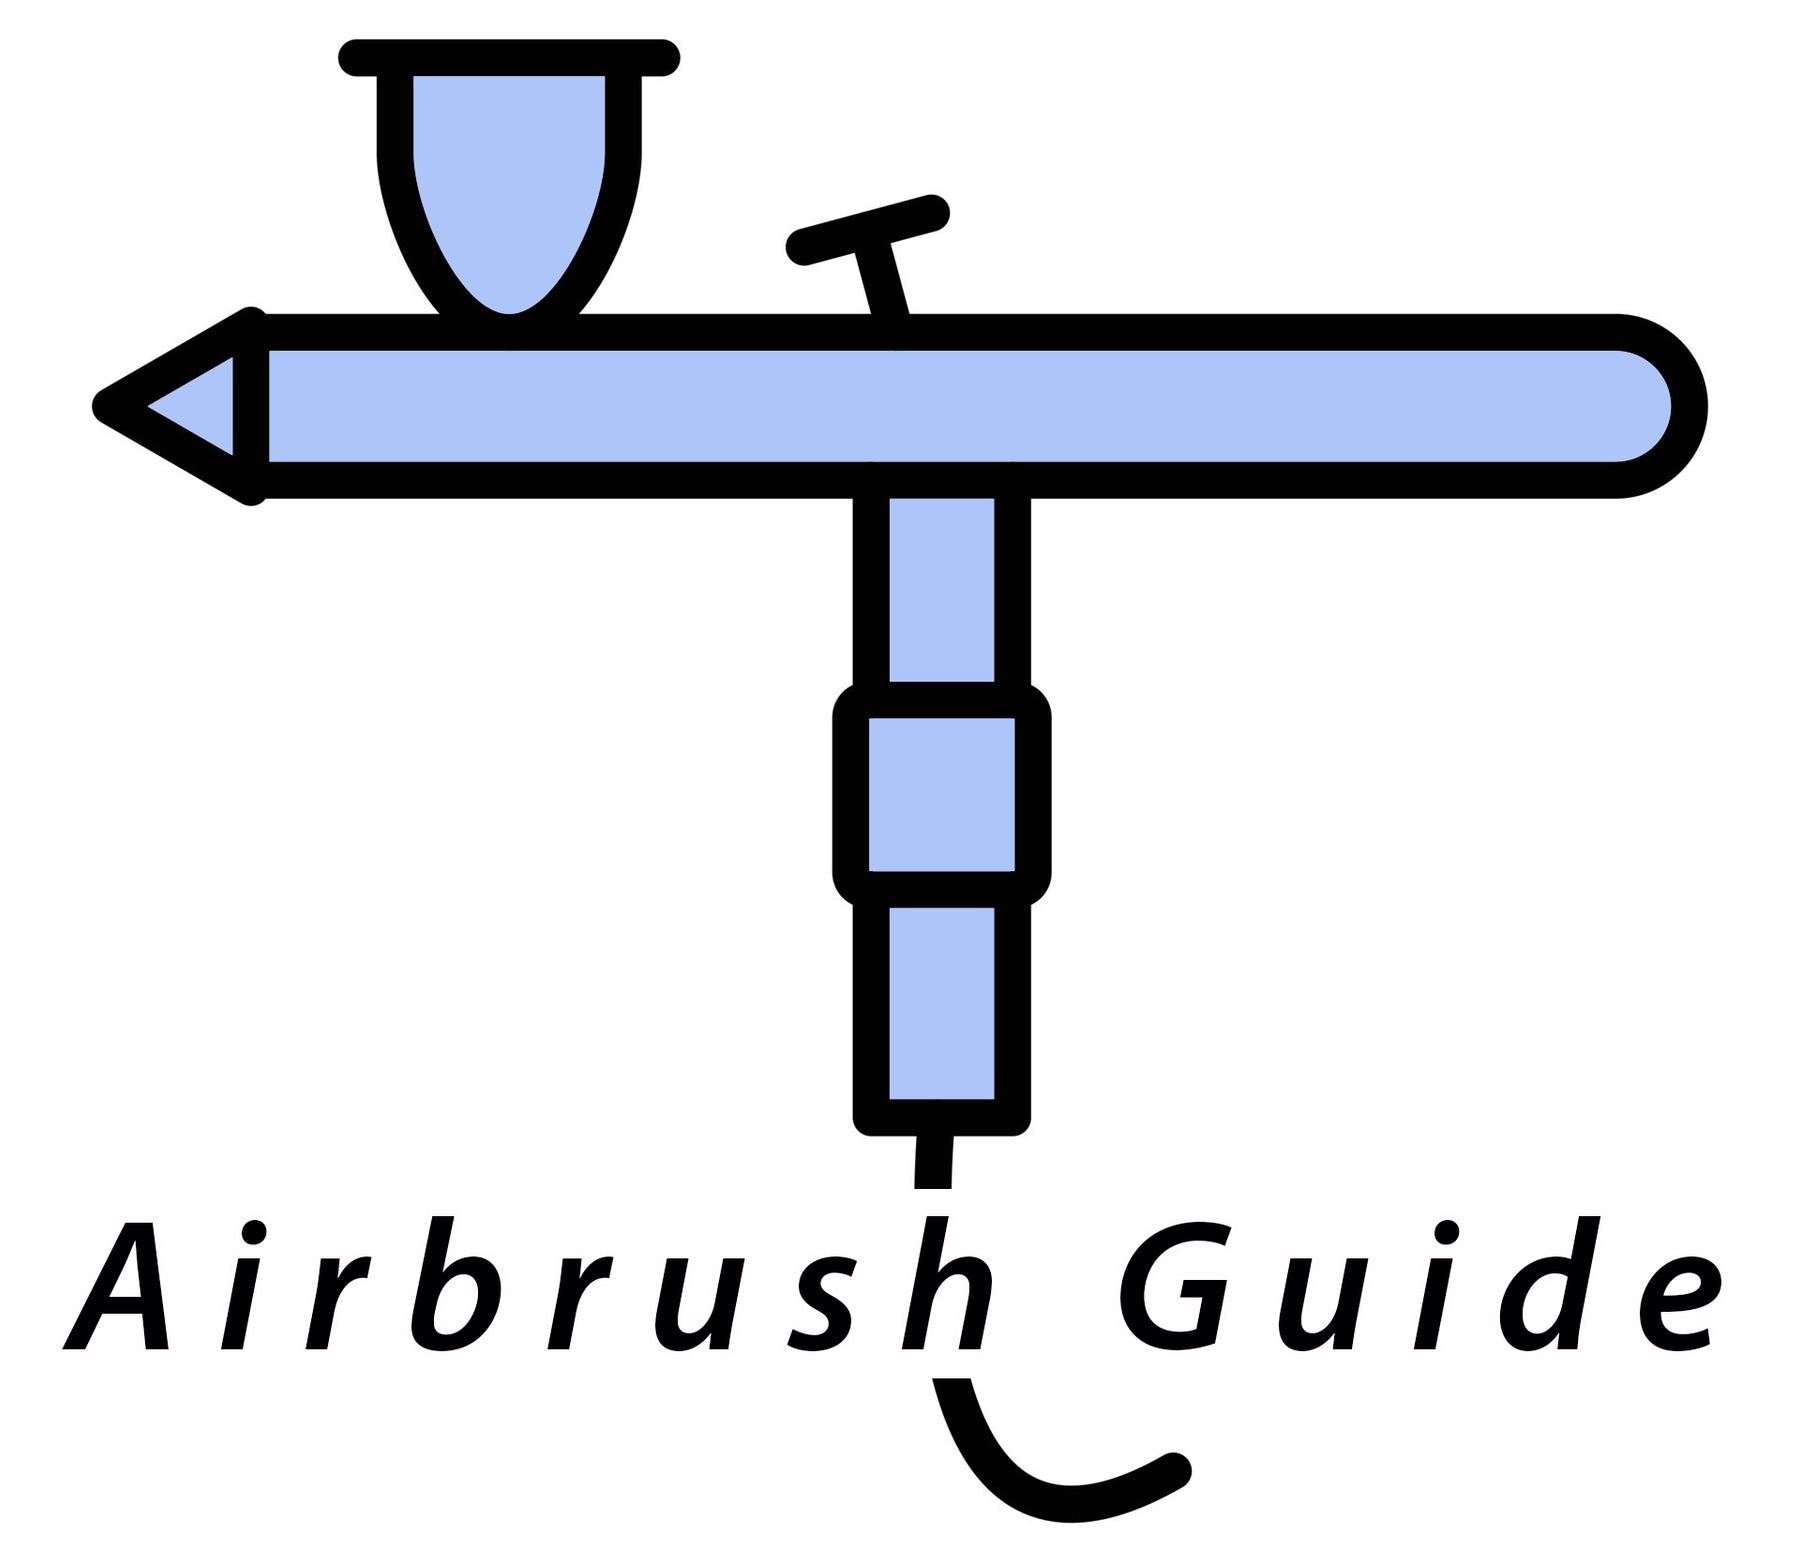 Airbrush Buyer's Guide